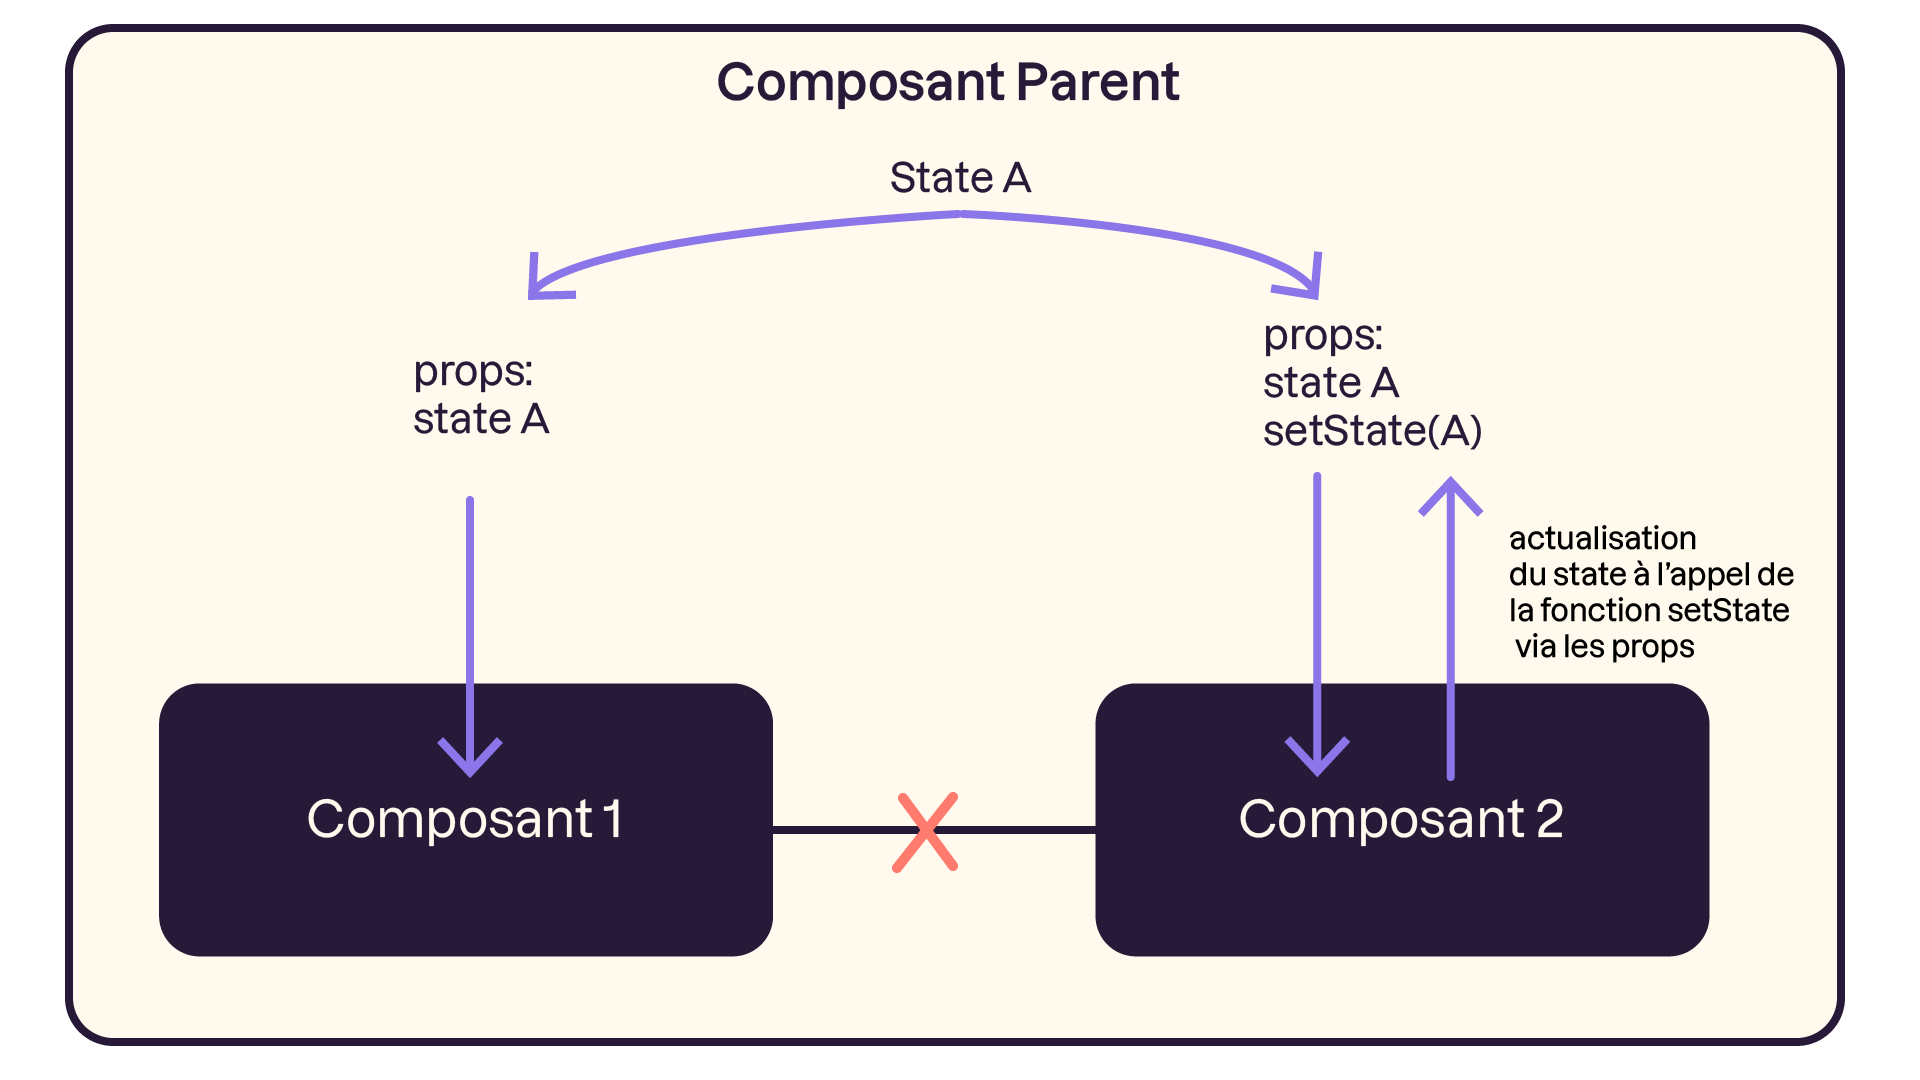 Ici, nous visualisons la distribution d’un state A en tant que props A et B dans les composant A et B. Le composant B reçoit en props le setState(A) qui permet de faire remonter l’état dans le composant parent